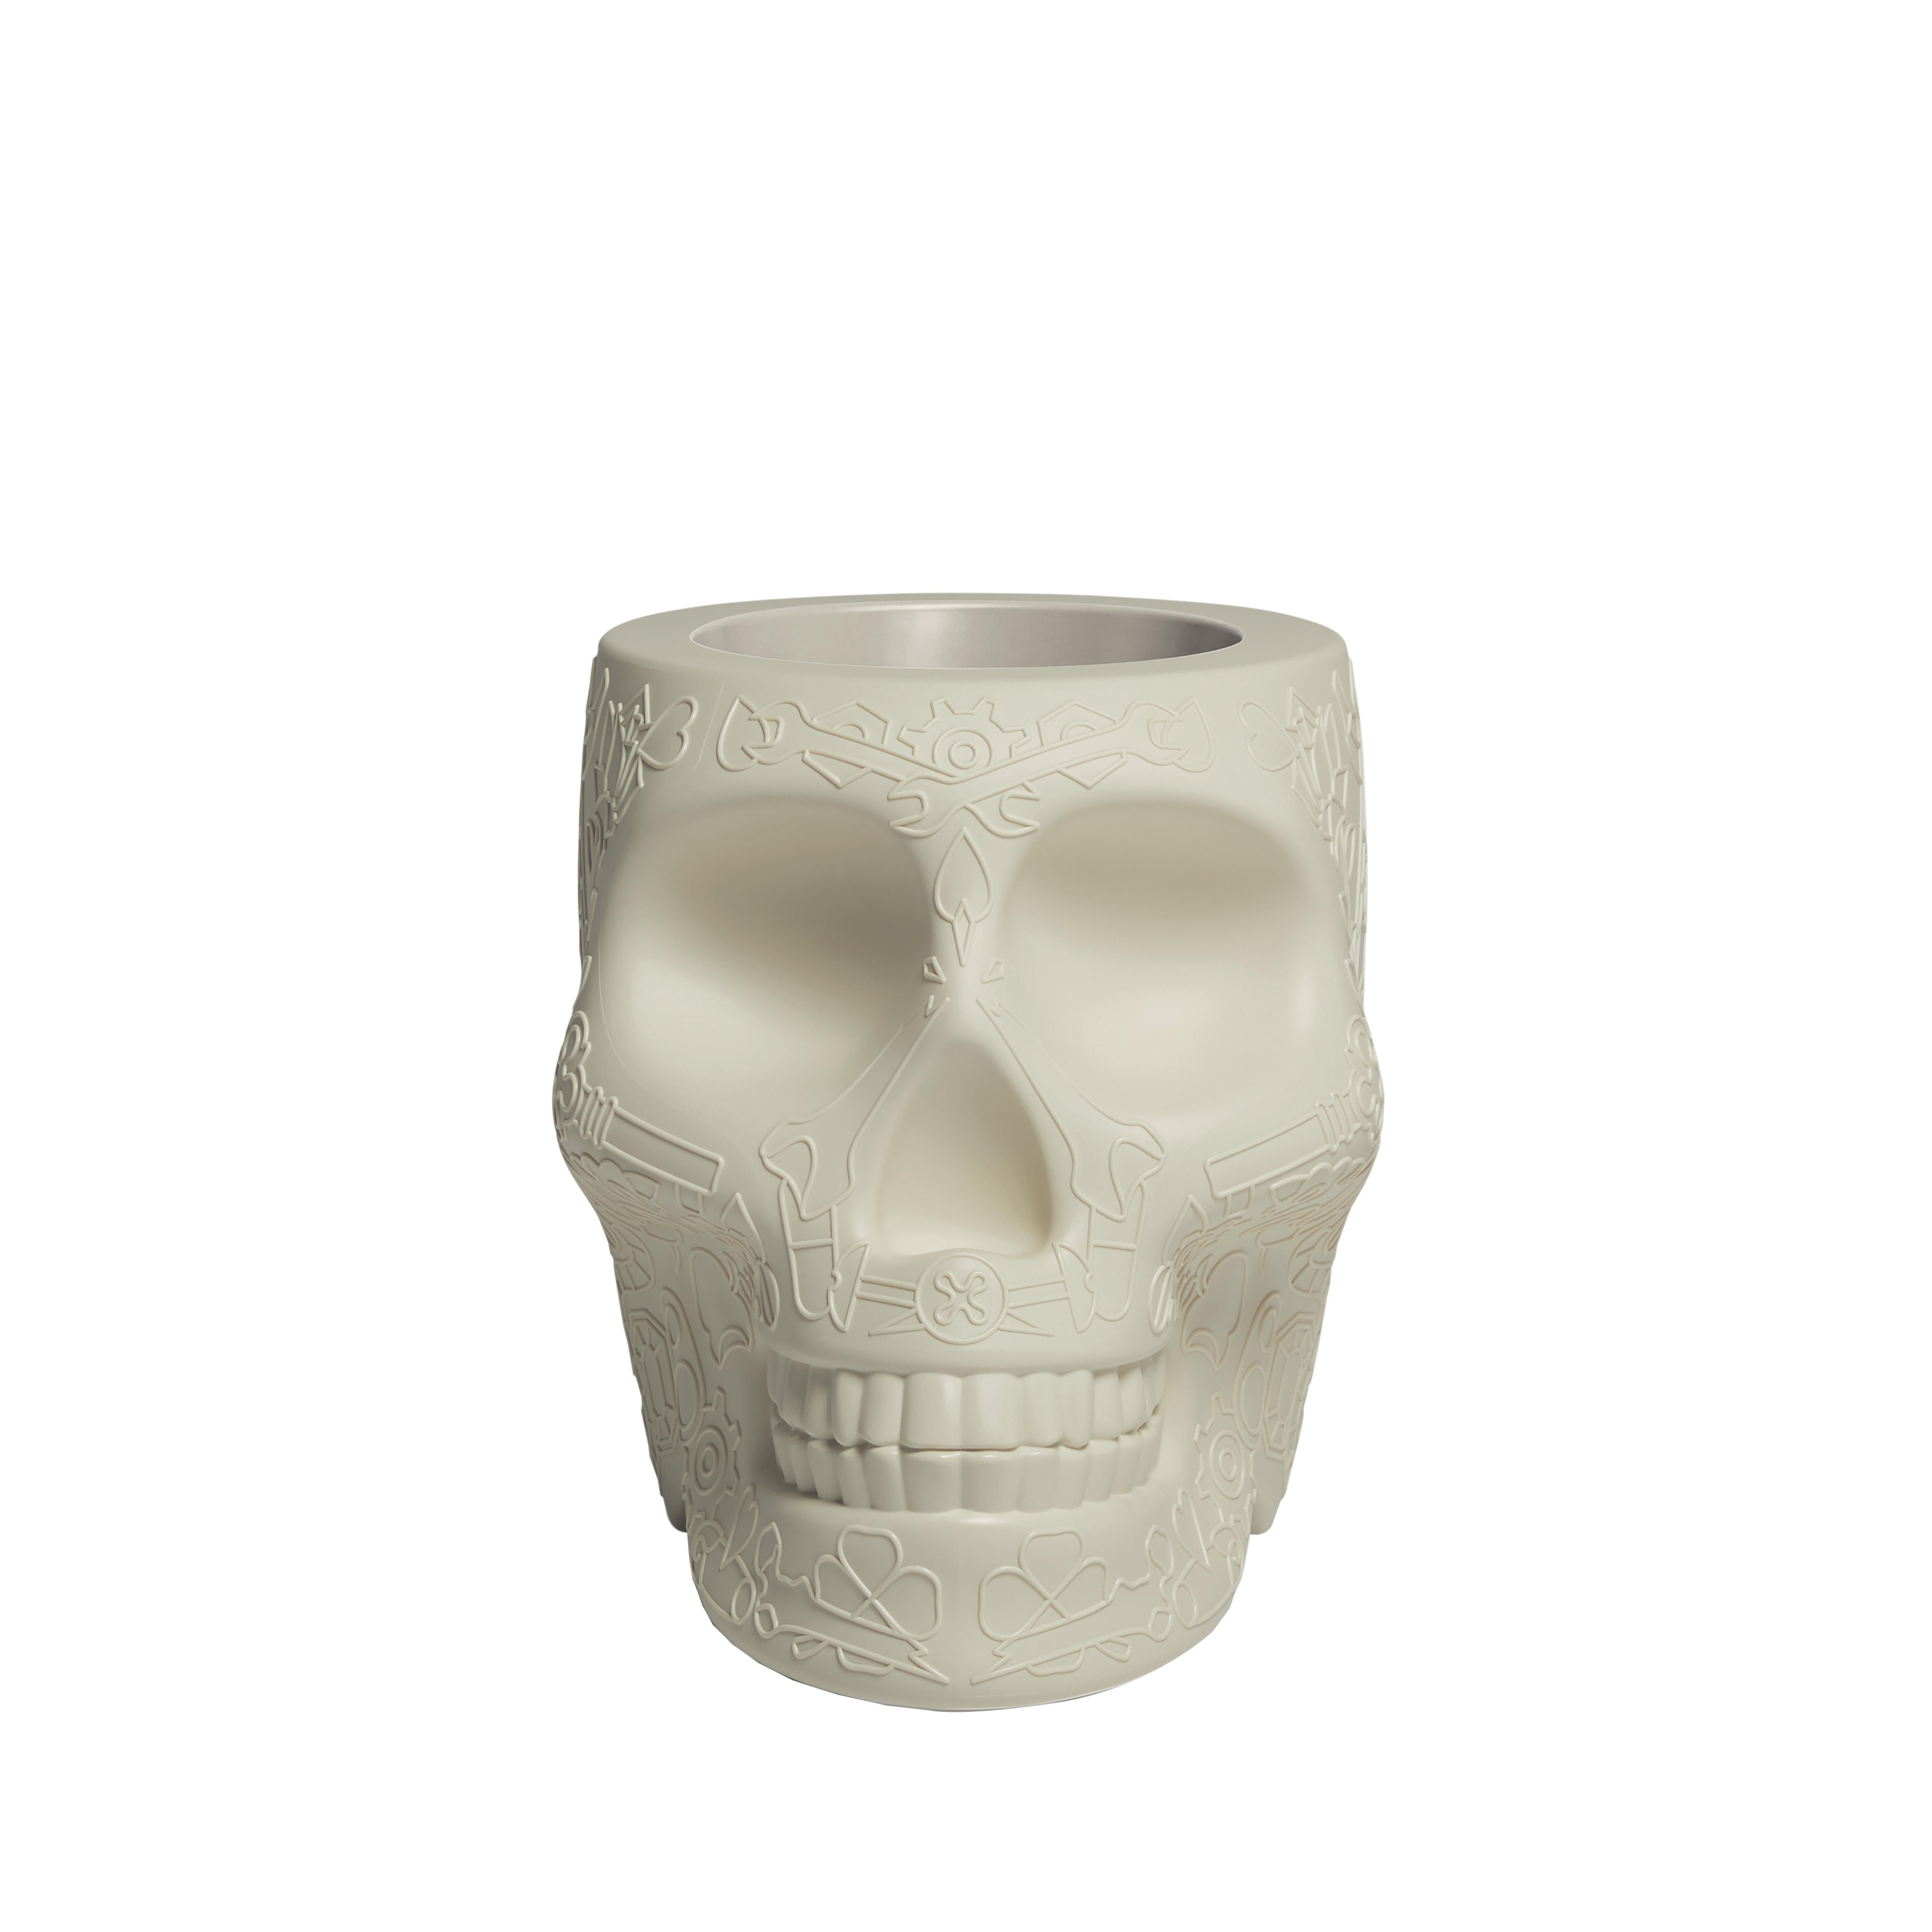 For Sale: White (Ivory) Modern Skull Terracotta Plastic Planter or Champagne Cooler by Studio Job